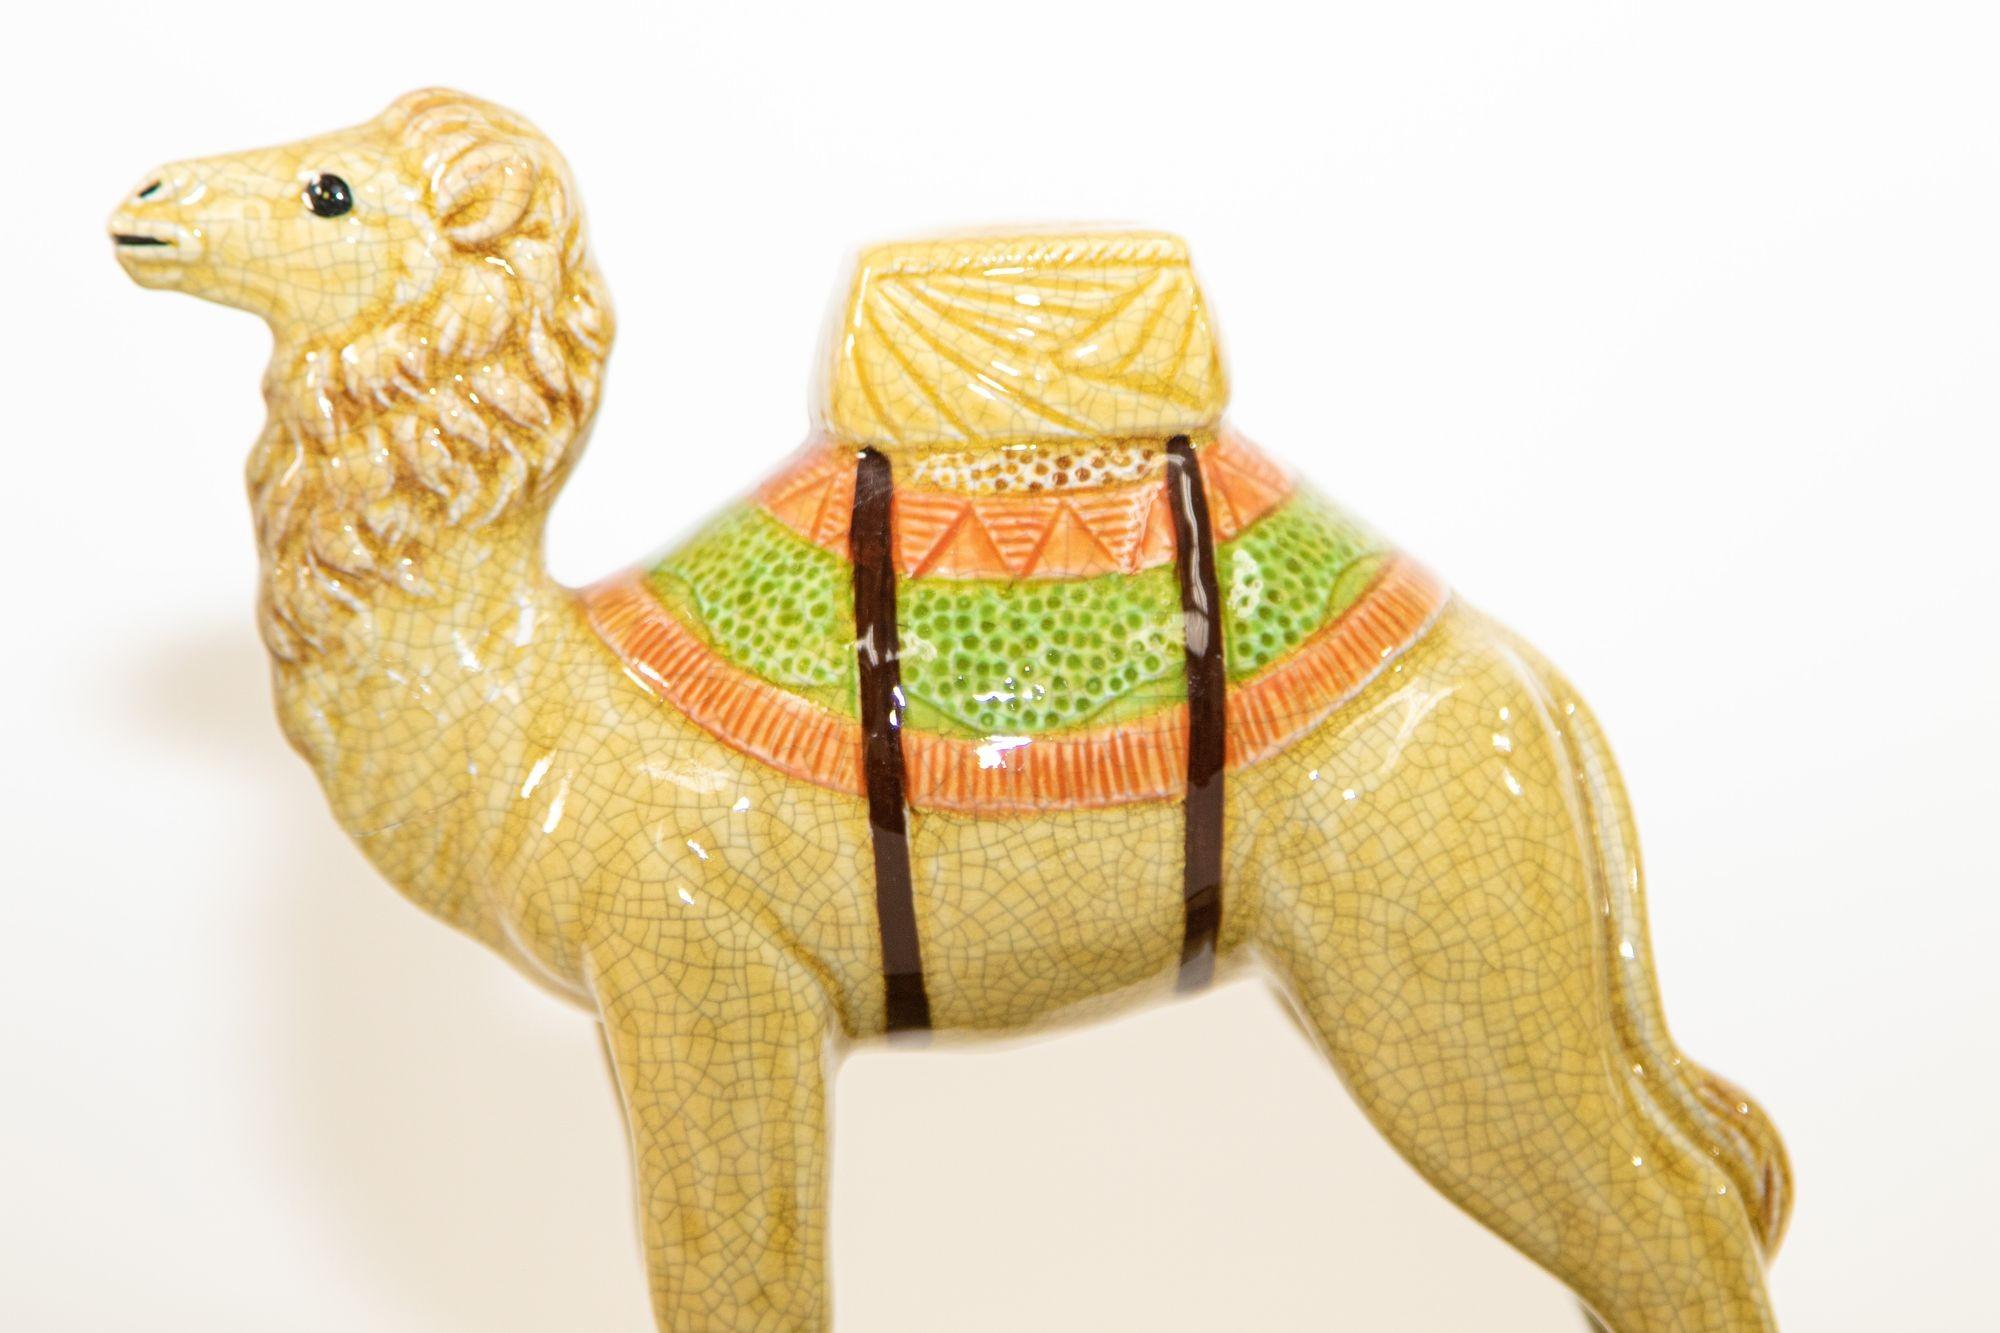 Moorish Vintage Porcelain Camel Sculptures Figurines Bookends For Sale